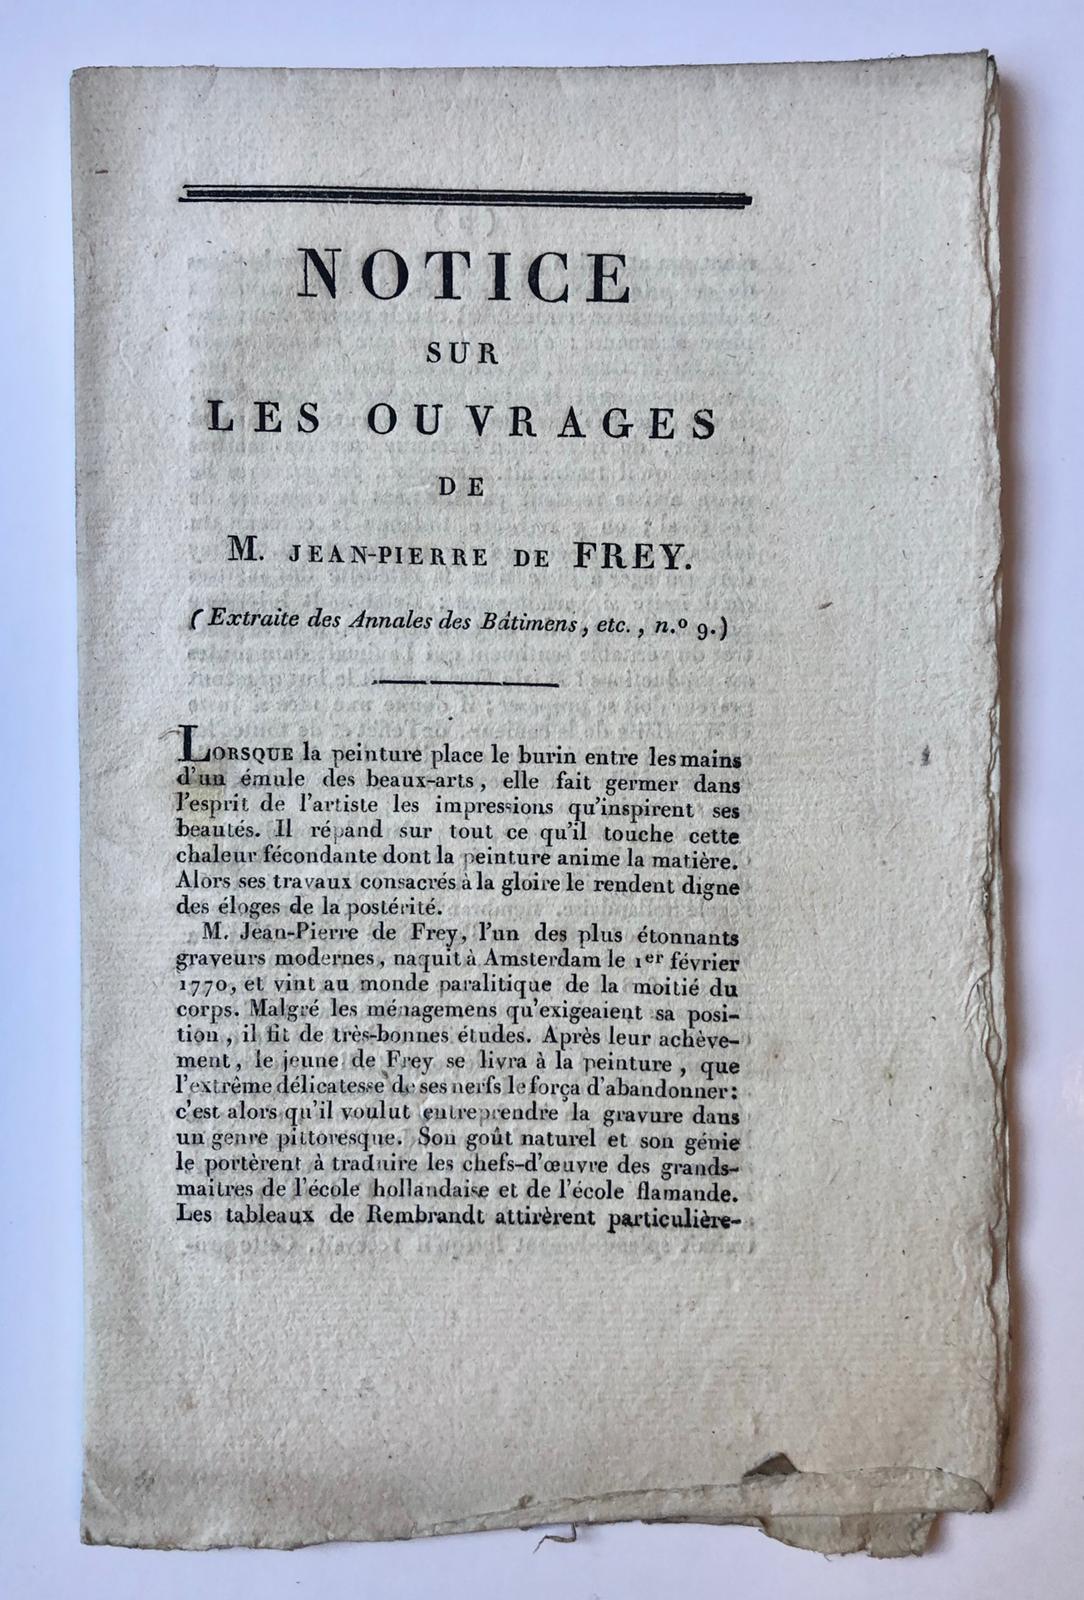  - [Catalogue antique prints by de Frey, 19th century] 'Notice sur les ouvrages de M. Jean-Pierre de Frey' door B. de Roquefort.